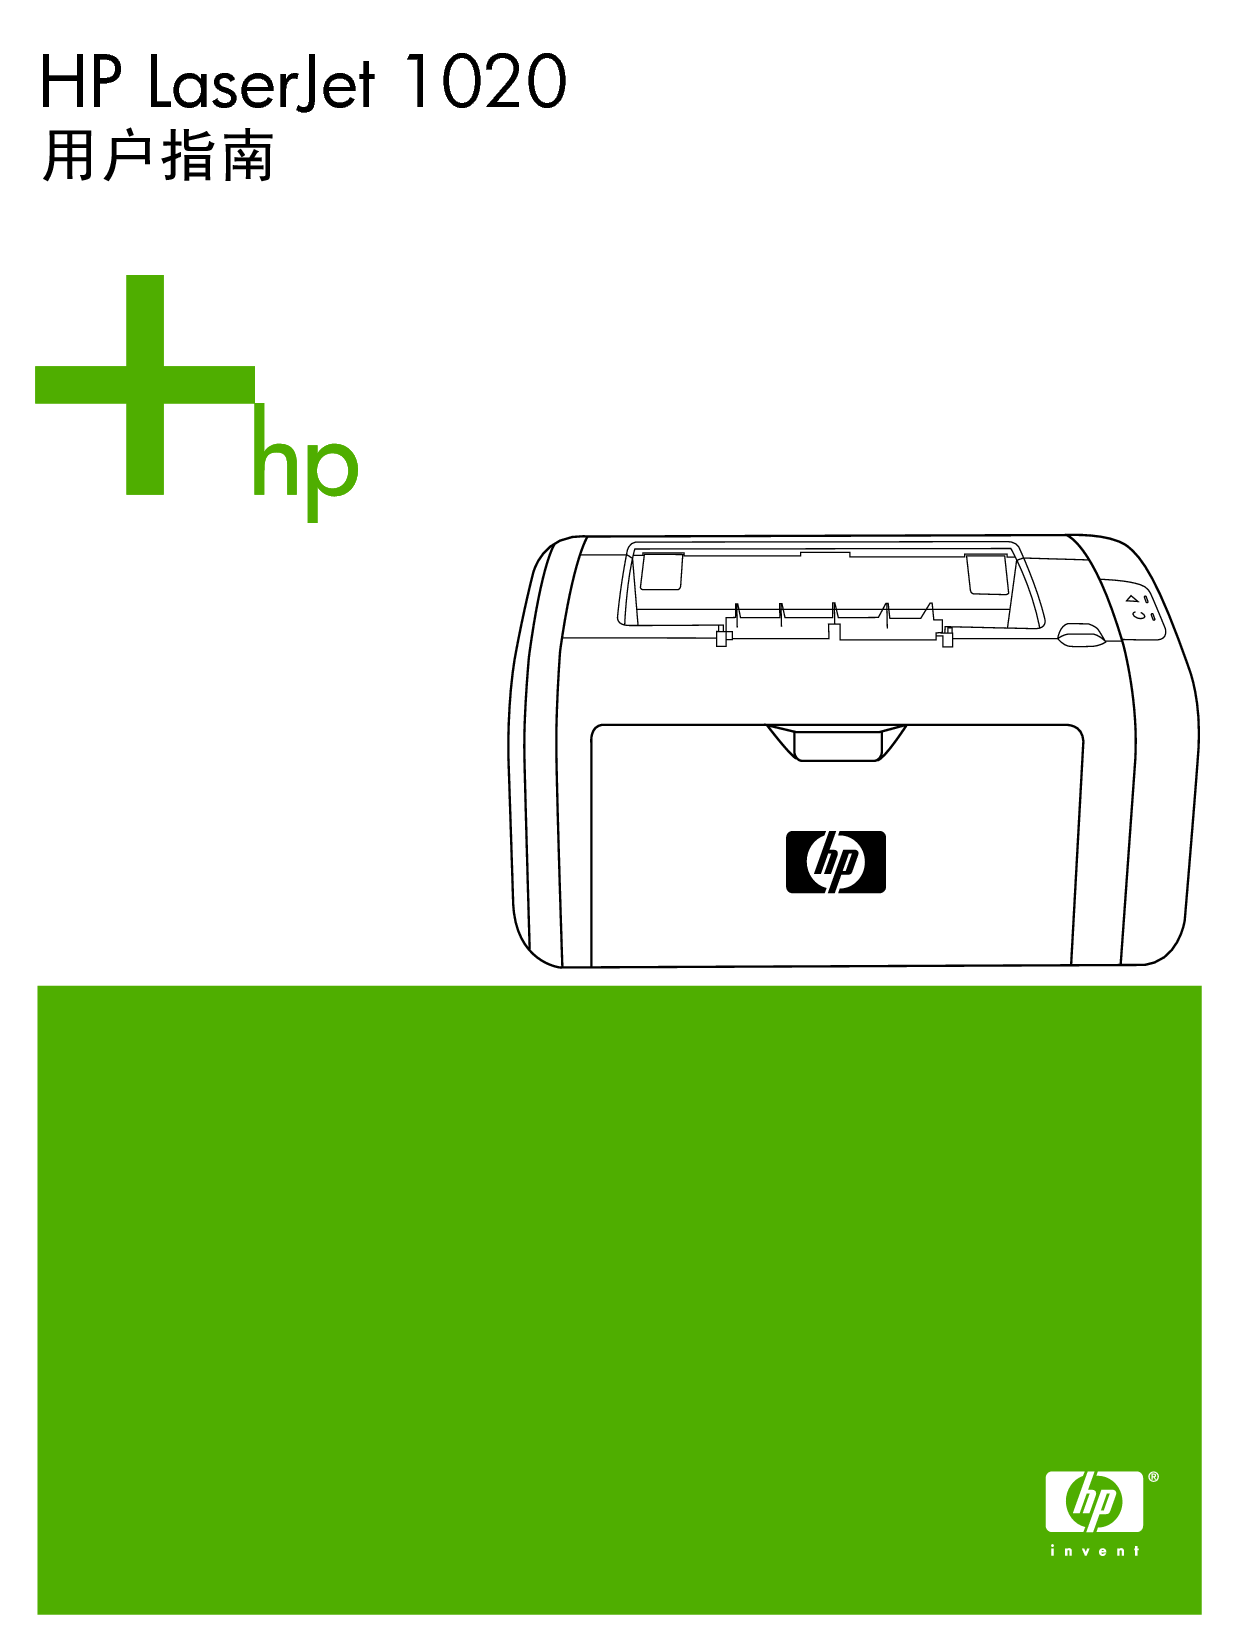 惠普 HP LaserJet 1020 用户指南 封面